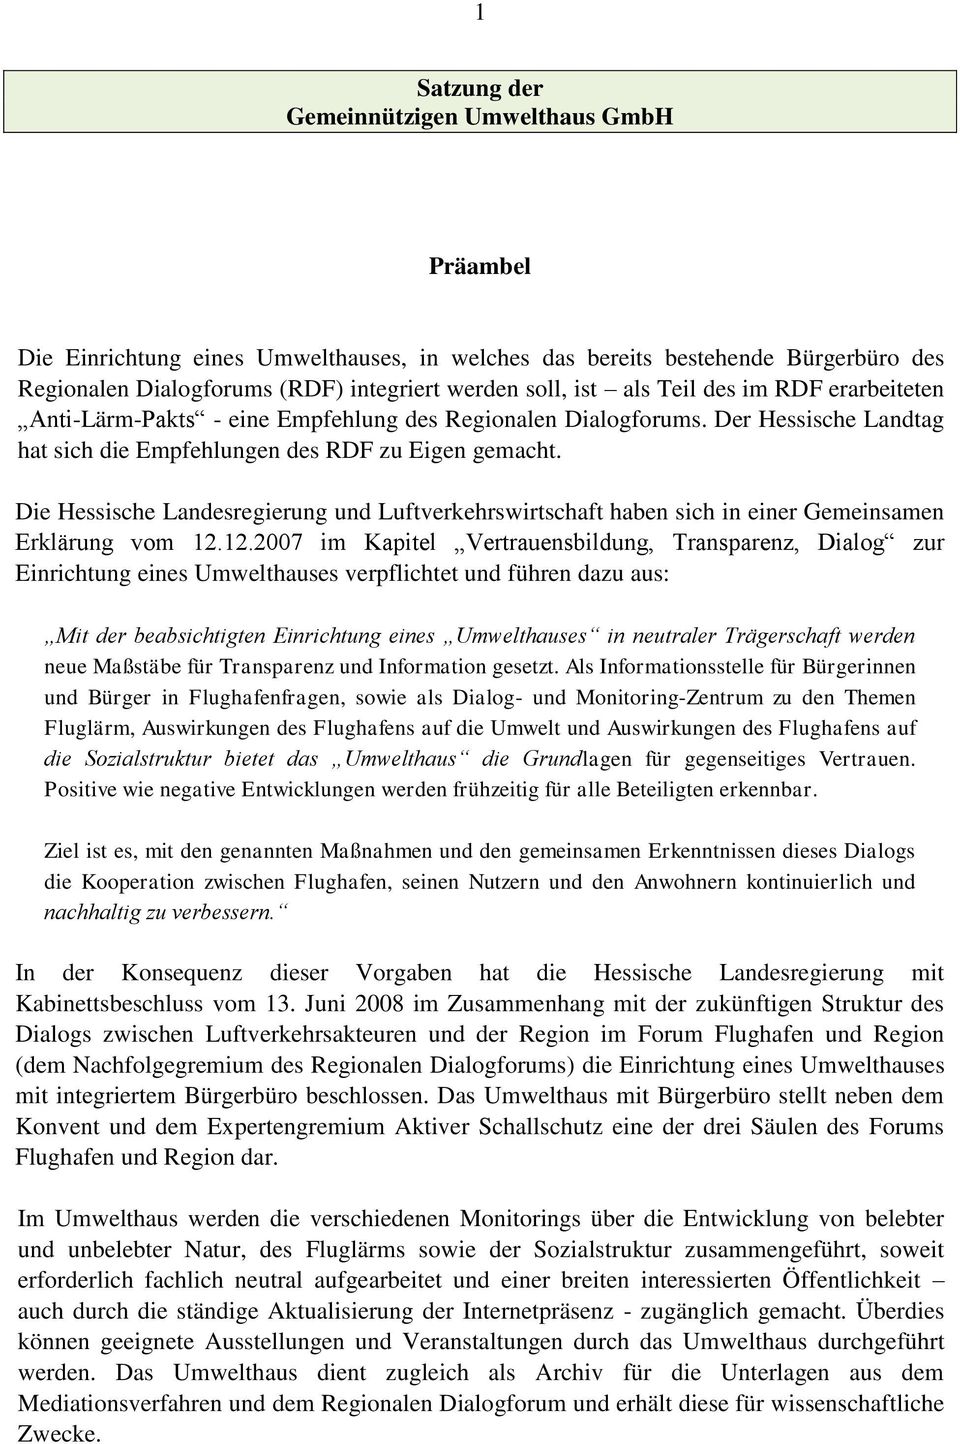 Die Hessische Landesregierung und Luftverkehrswirtschaft haben sich in einer Gemeinsamen Erklärung vom 12.